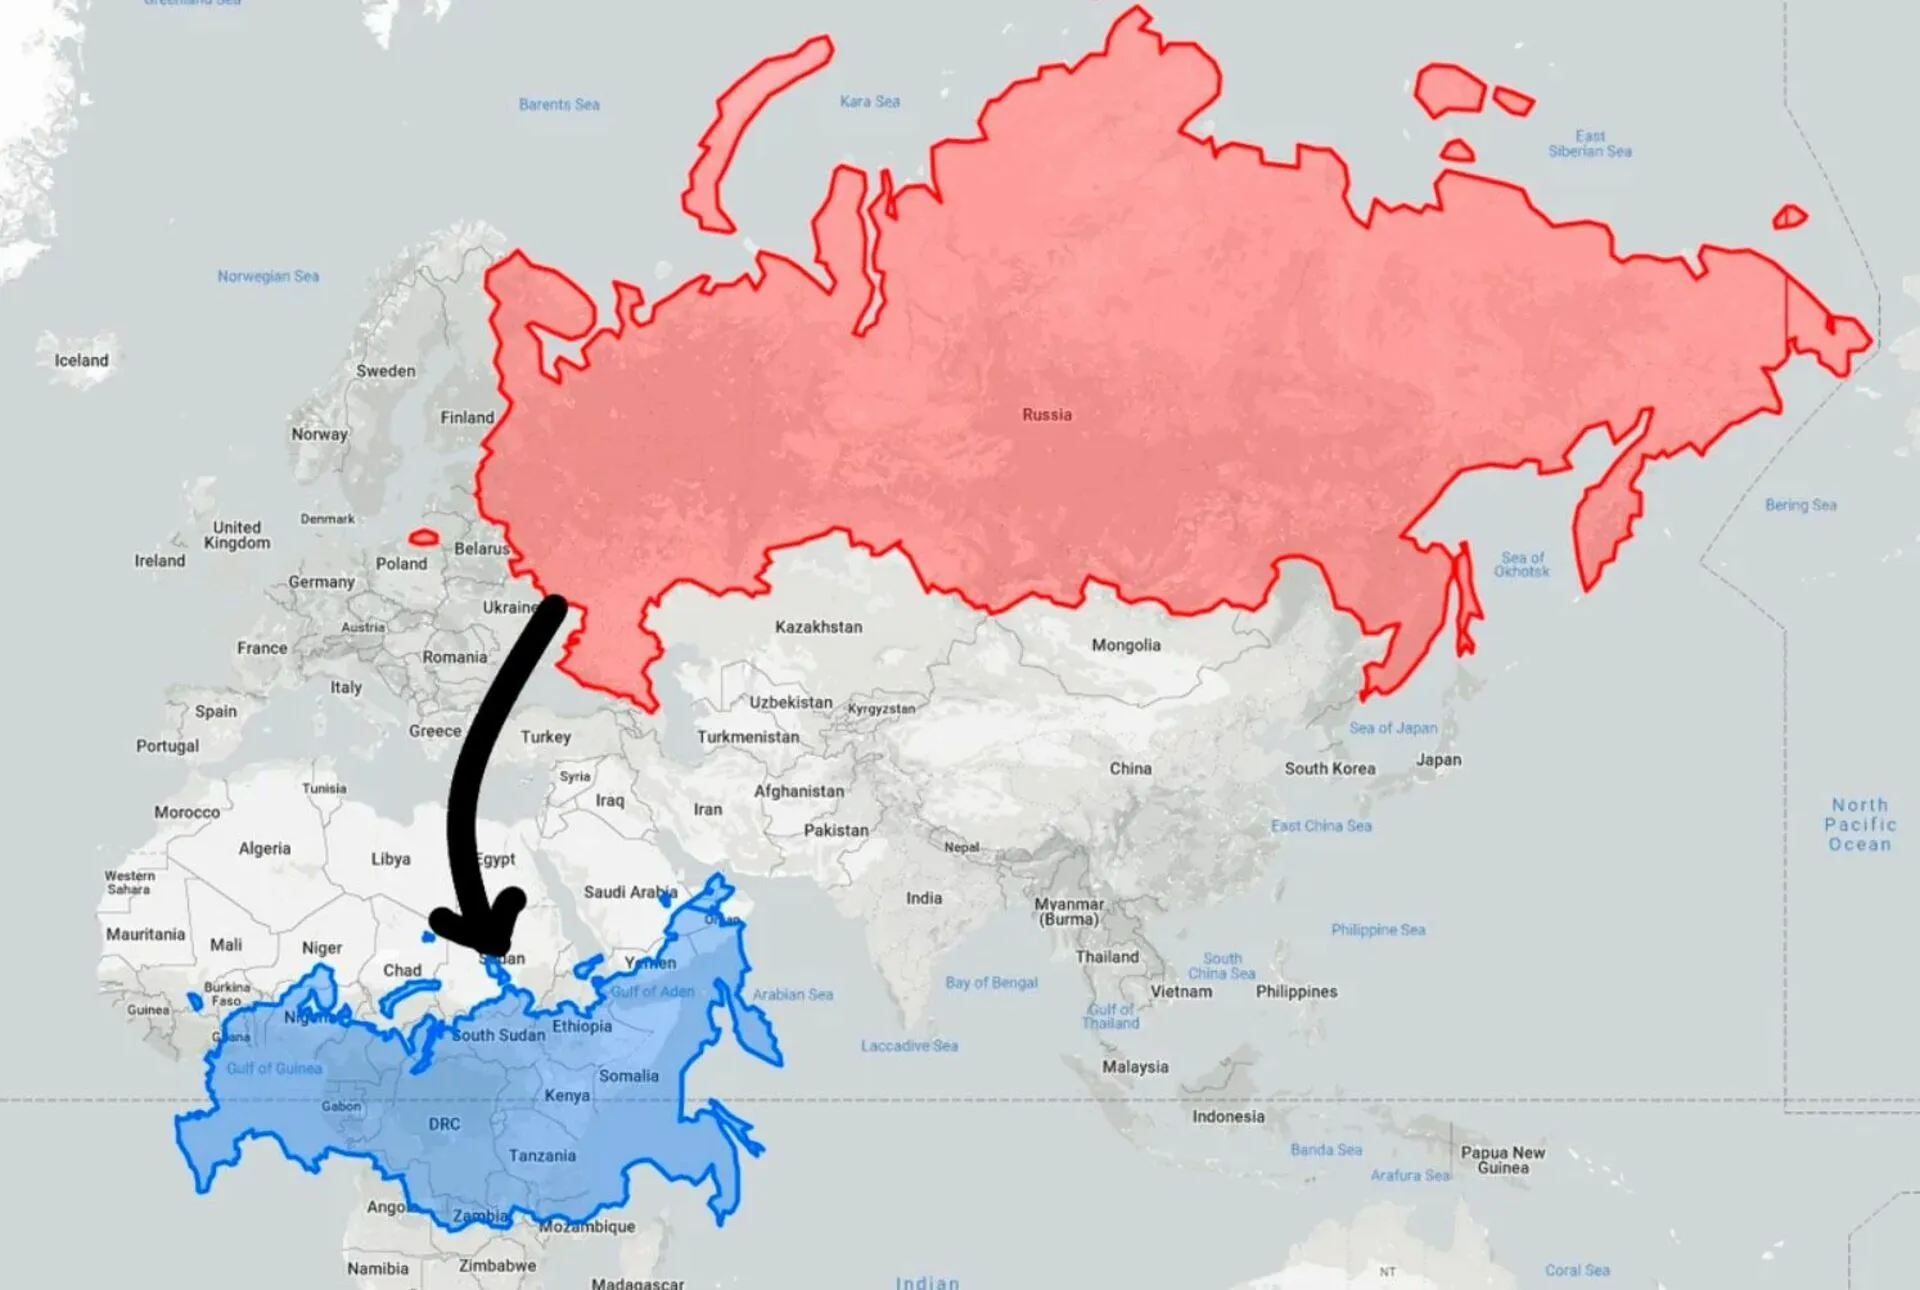 Площадь украины сравнение. Украина по сравнению с Россией. Посия пр сравнению с Укра ино. Реальная карта России. Украина по сравнению с Россией на карте.